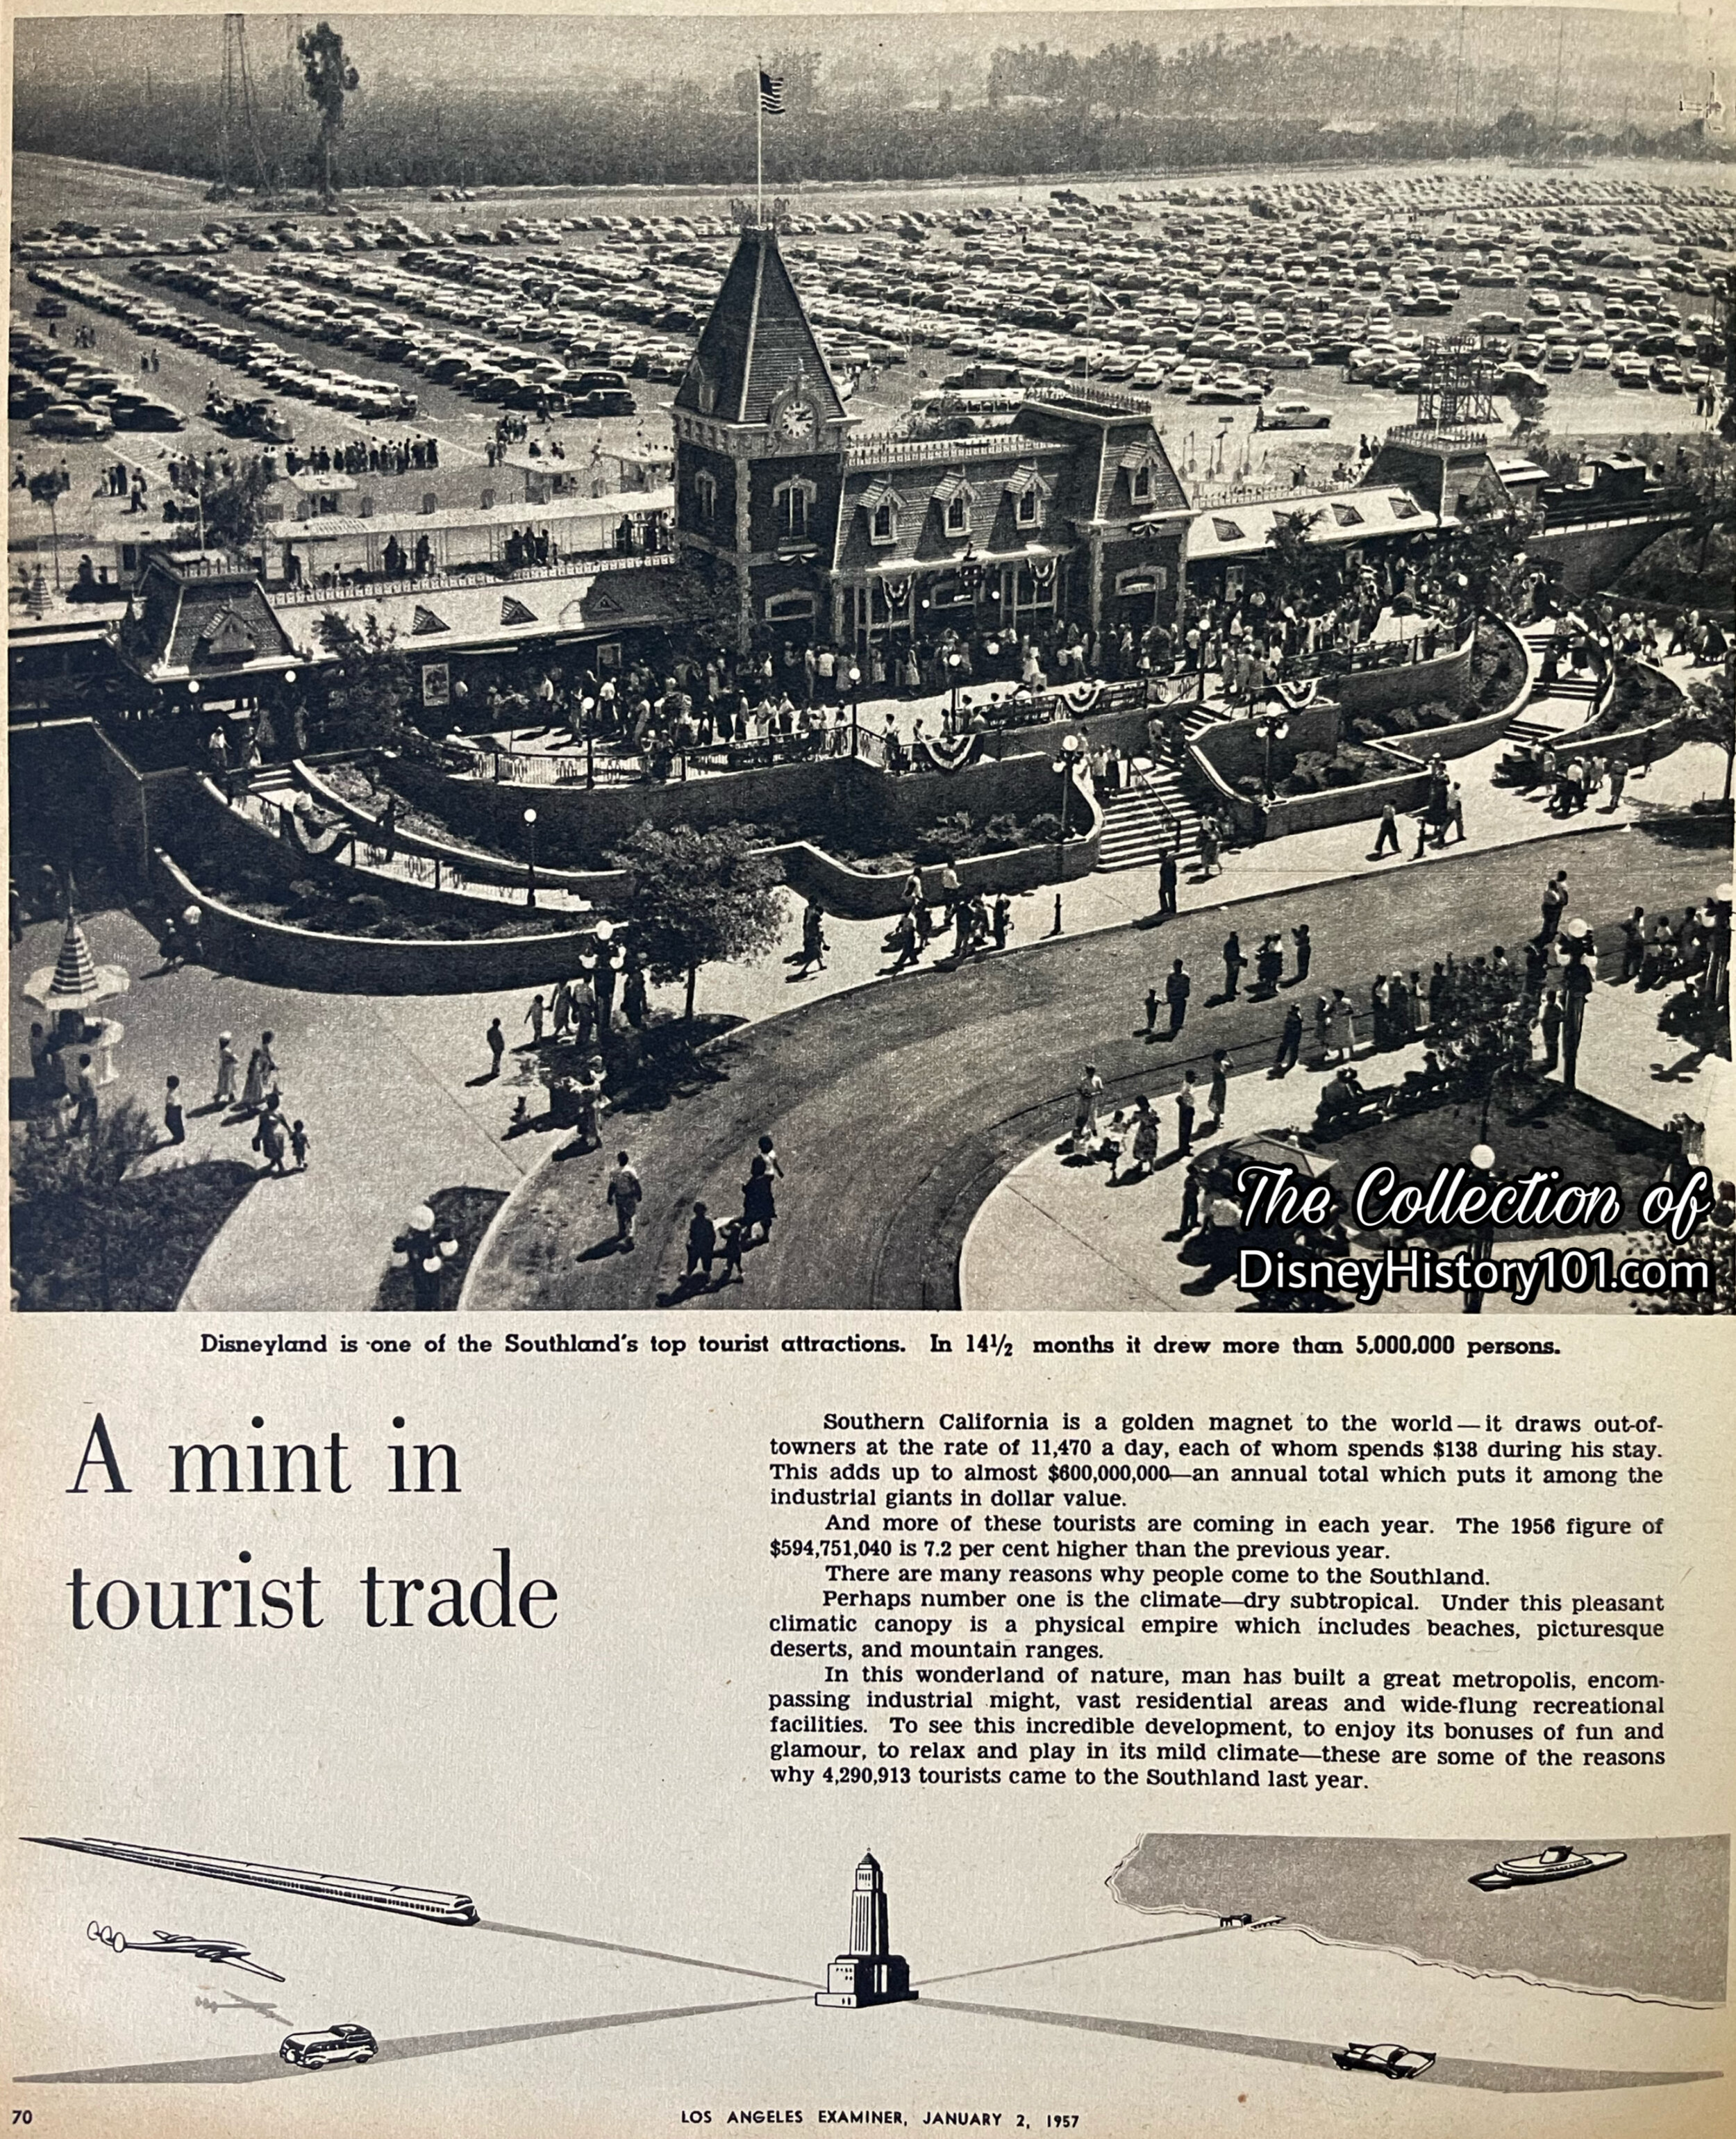 The Los Angeles Examiner, January 2, 1957.